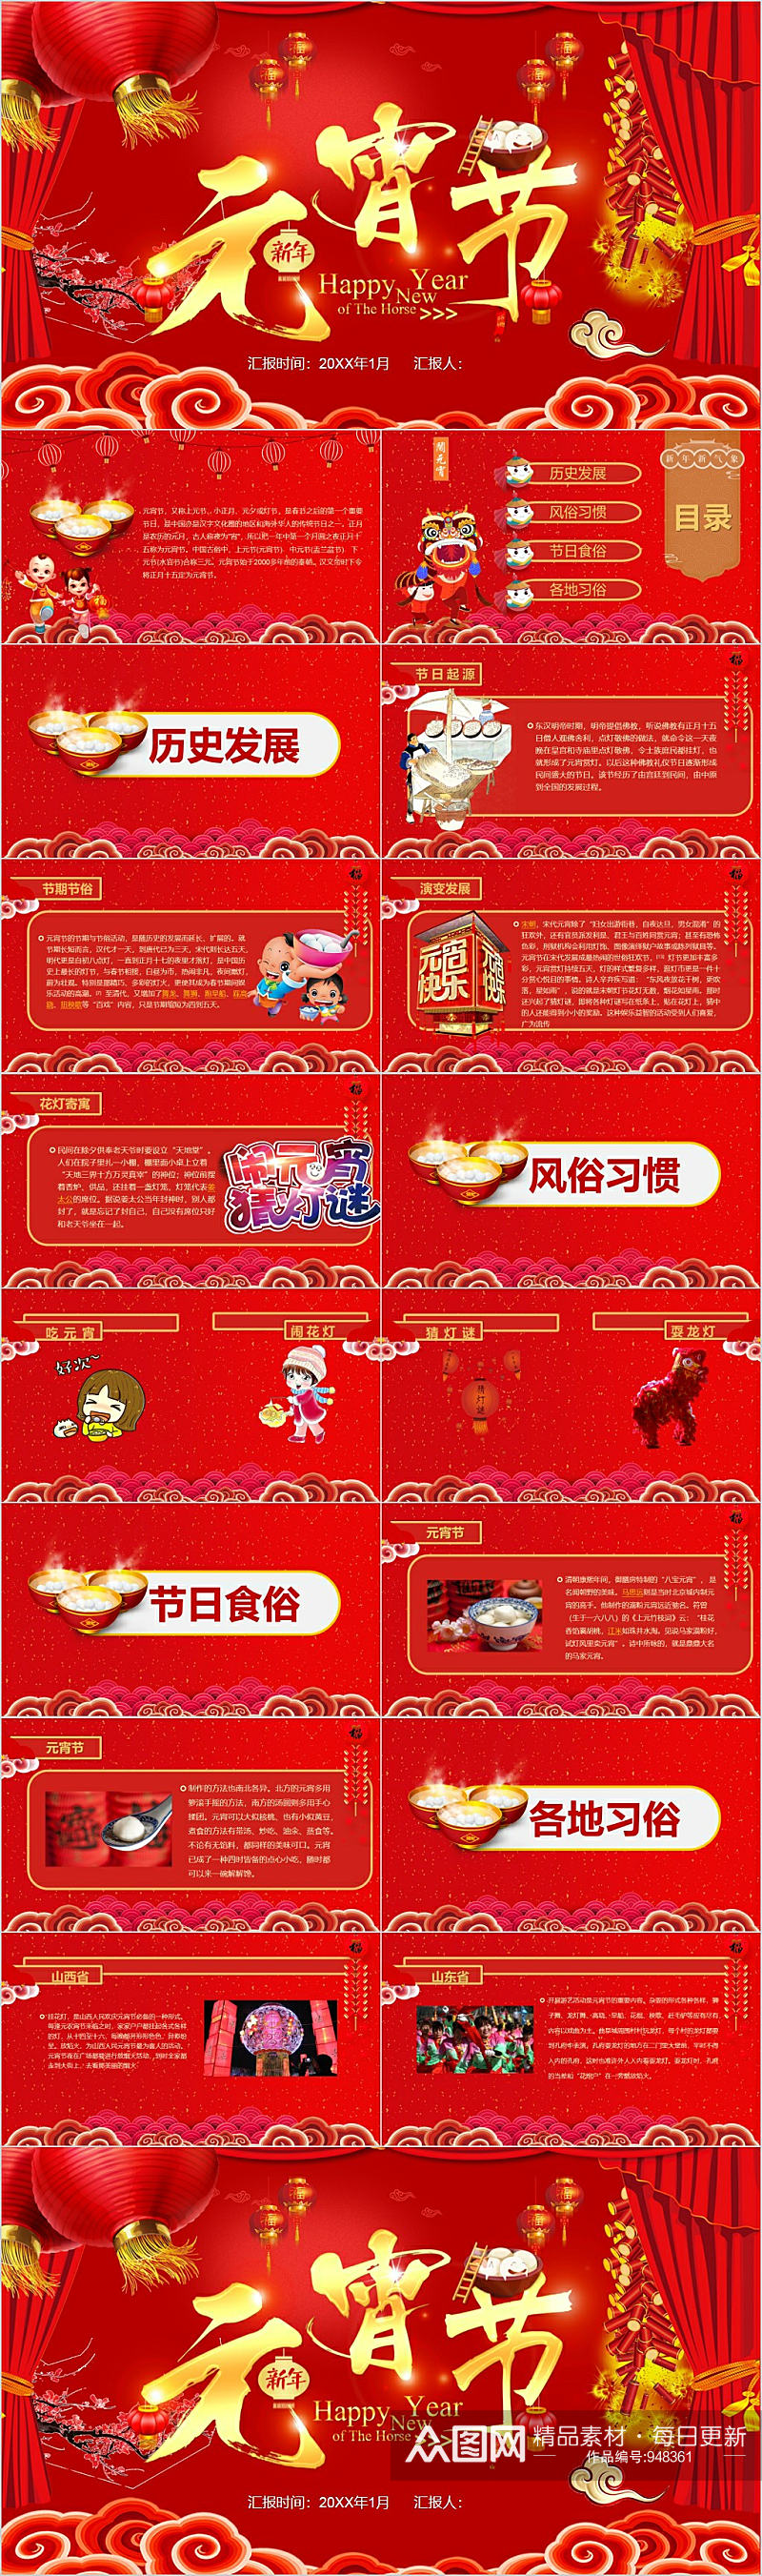 新年元宵节传统节日PPT素材